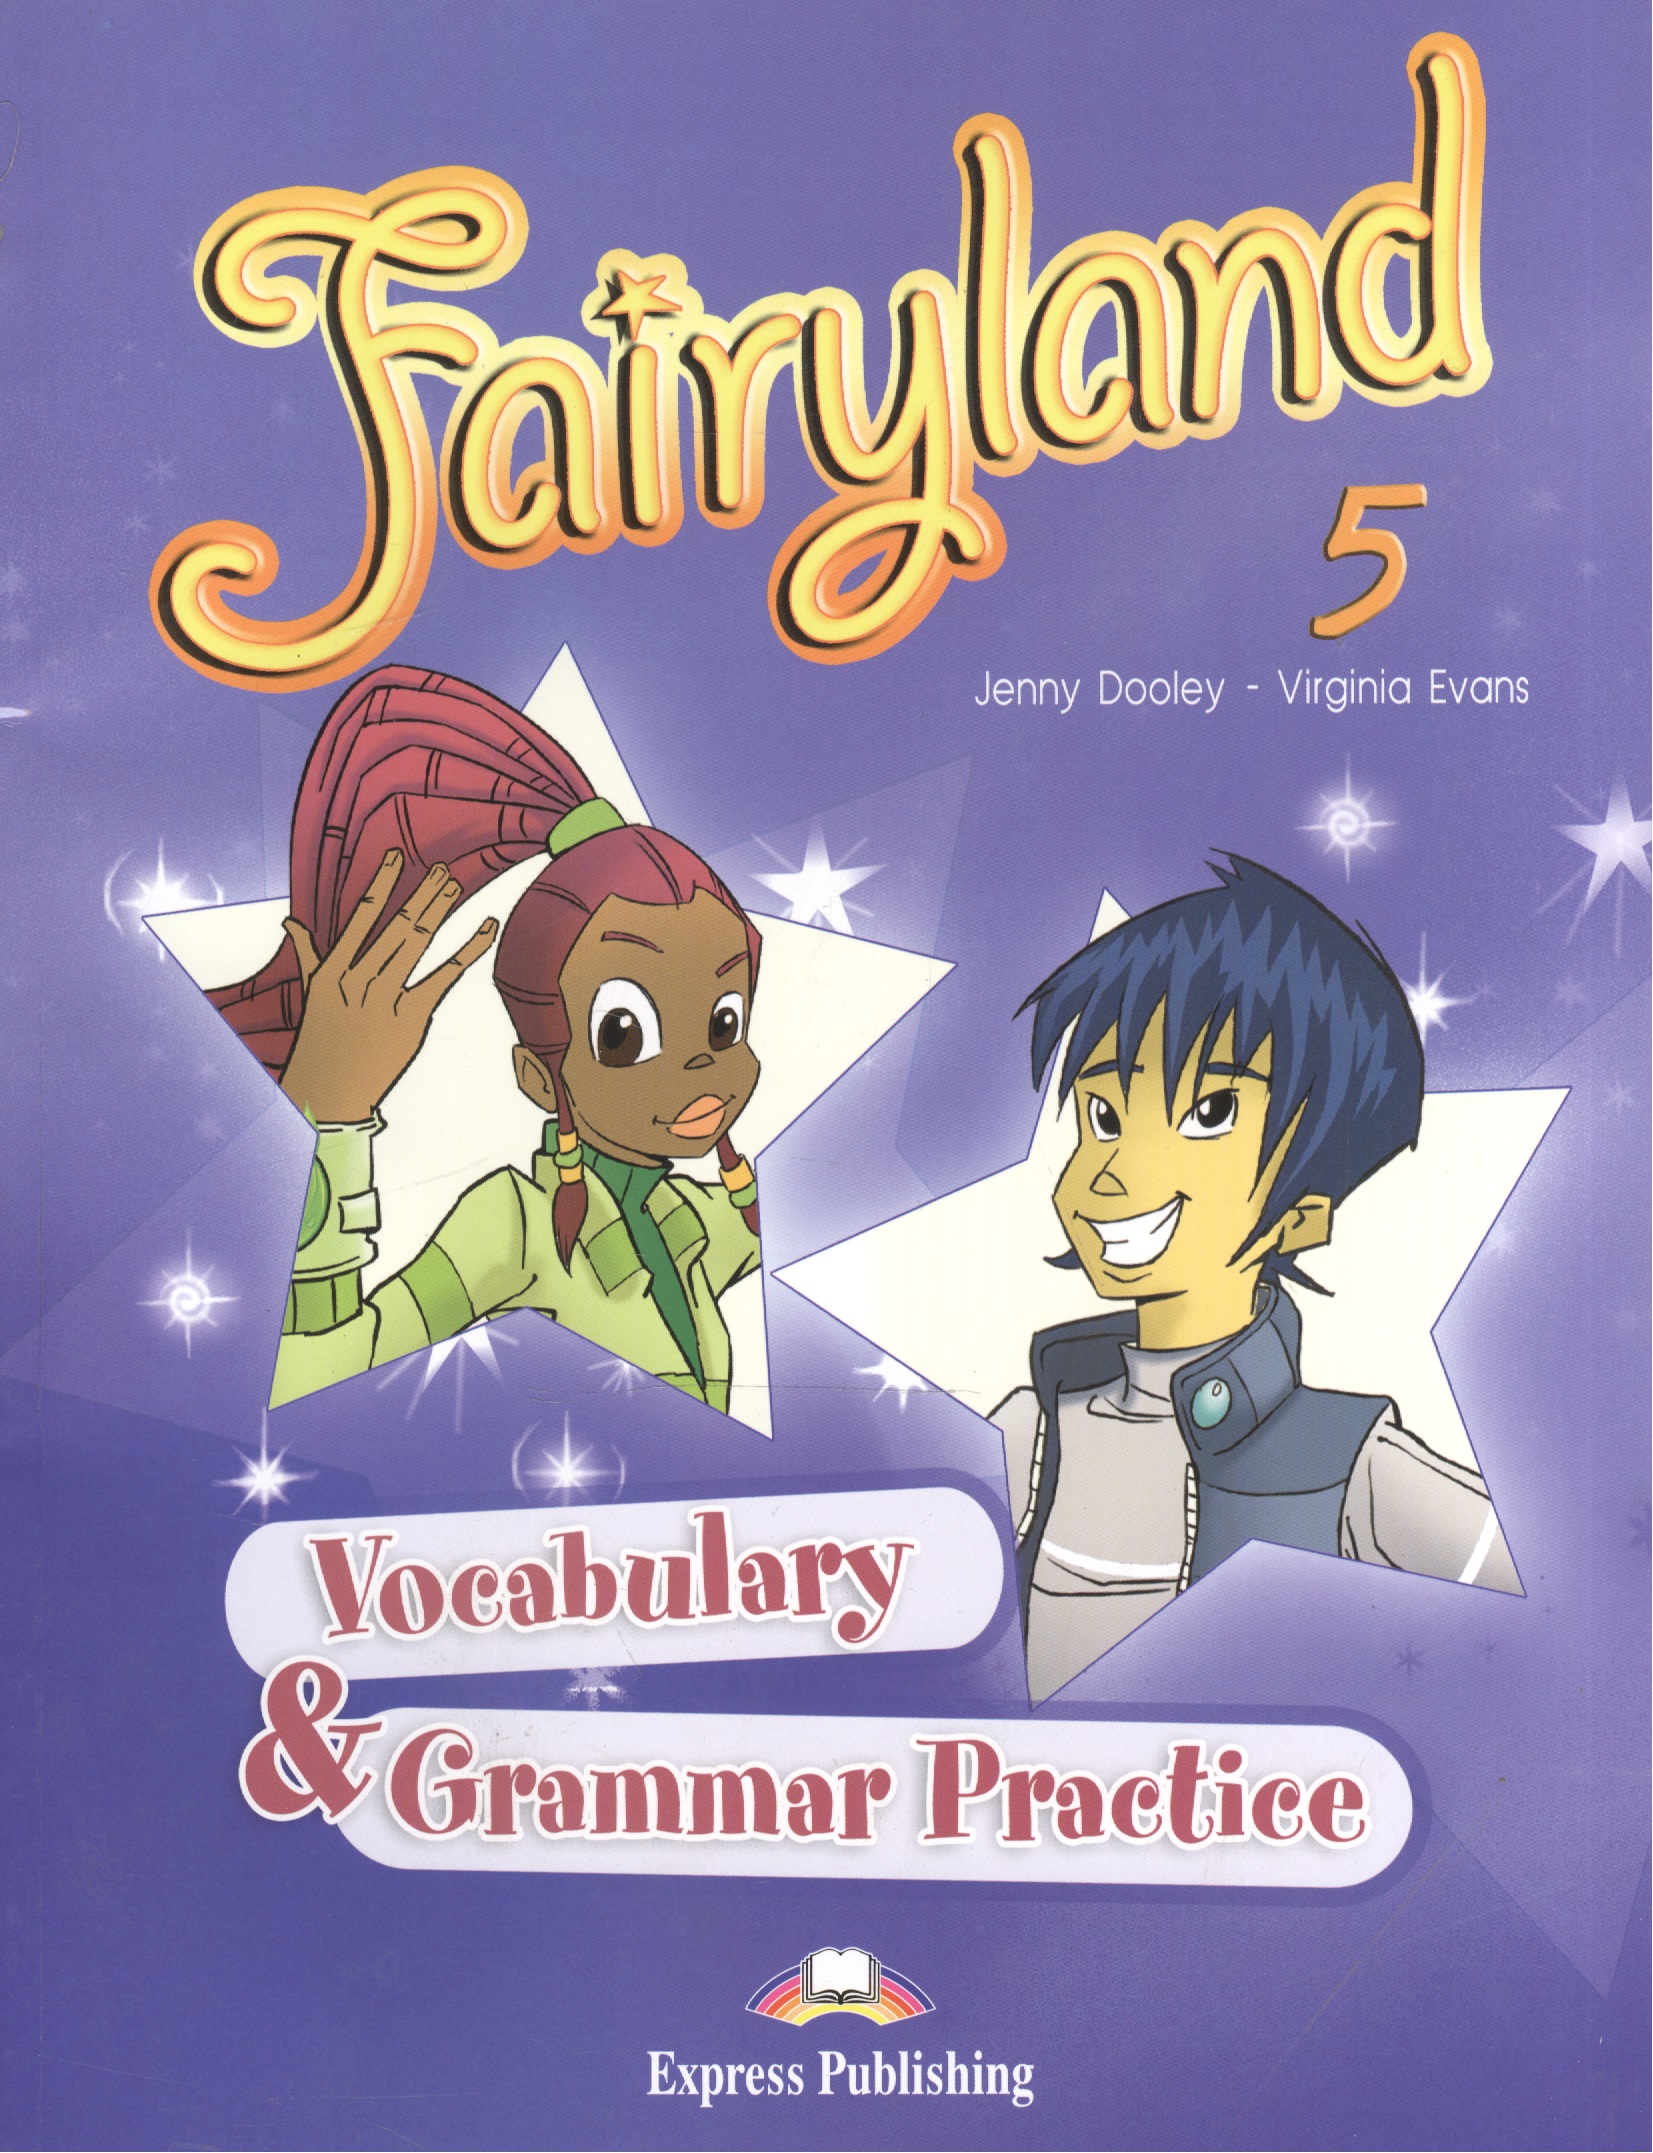 Эванс Вирджиния Fairyland 5. Vocabulary & Grammar Practice. Сборник лексических и грамматических упражнений эванс вирджиния fairyland 3 vocabulary